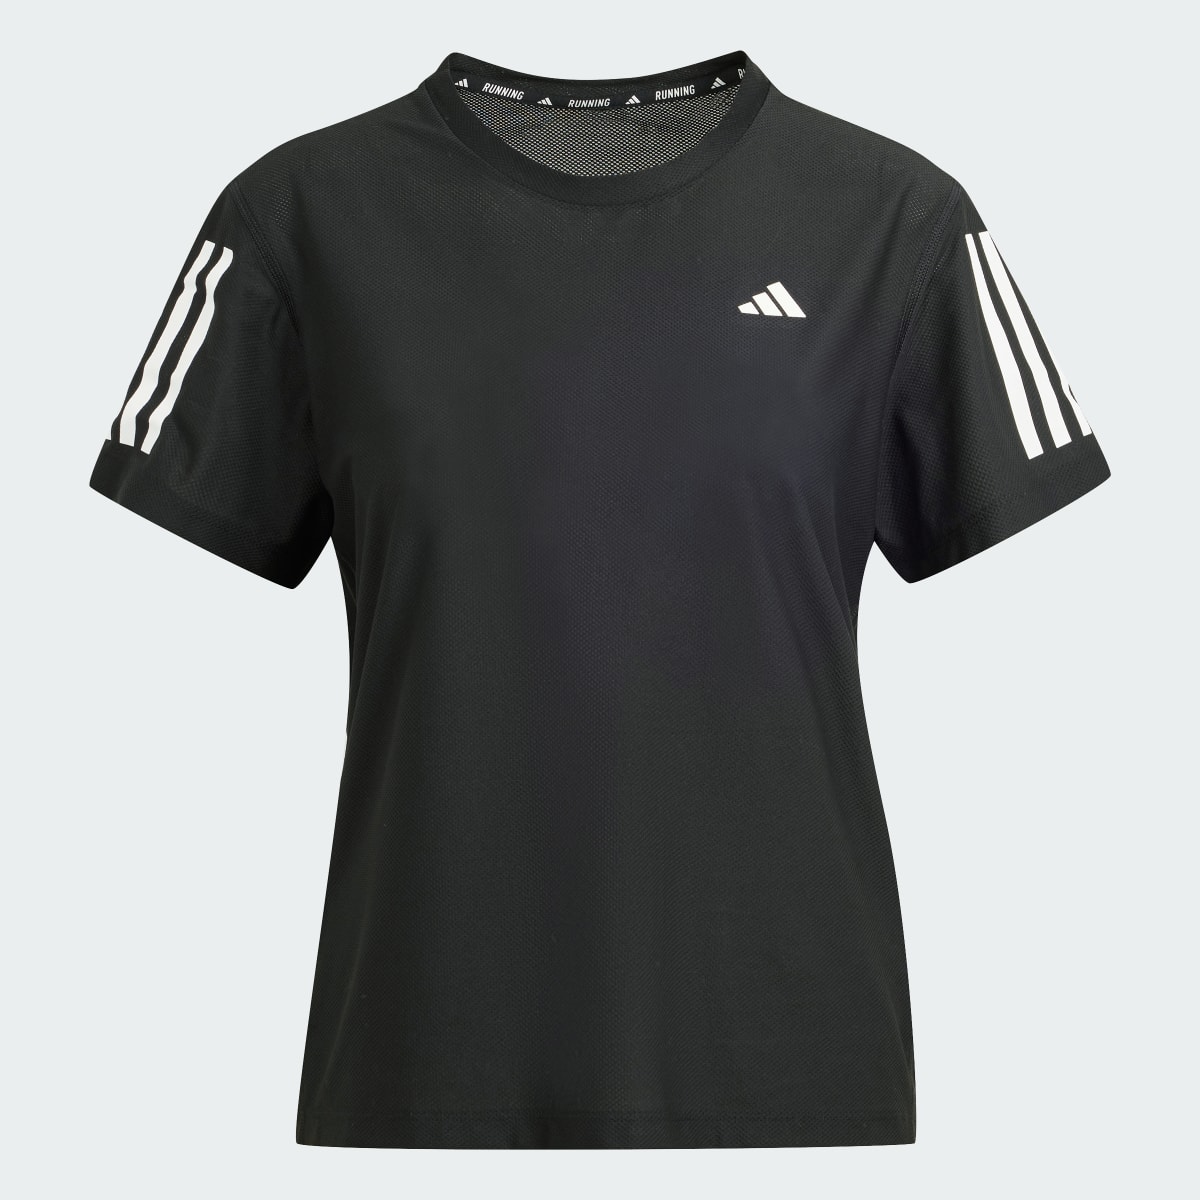 Adidas Own The Run T-Shirt. 5